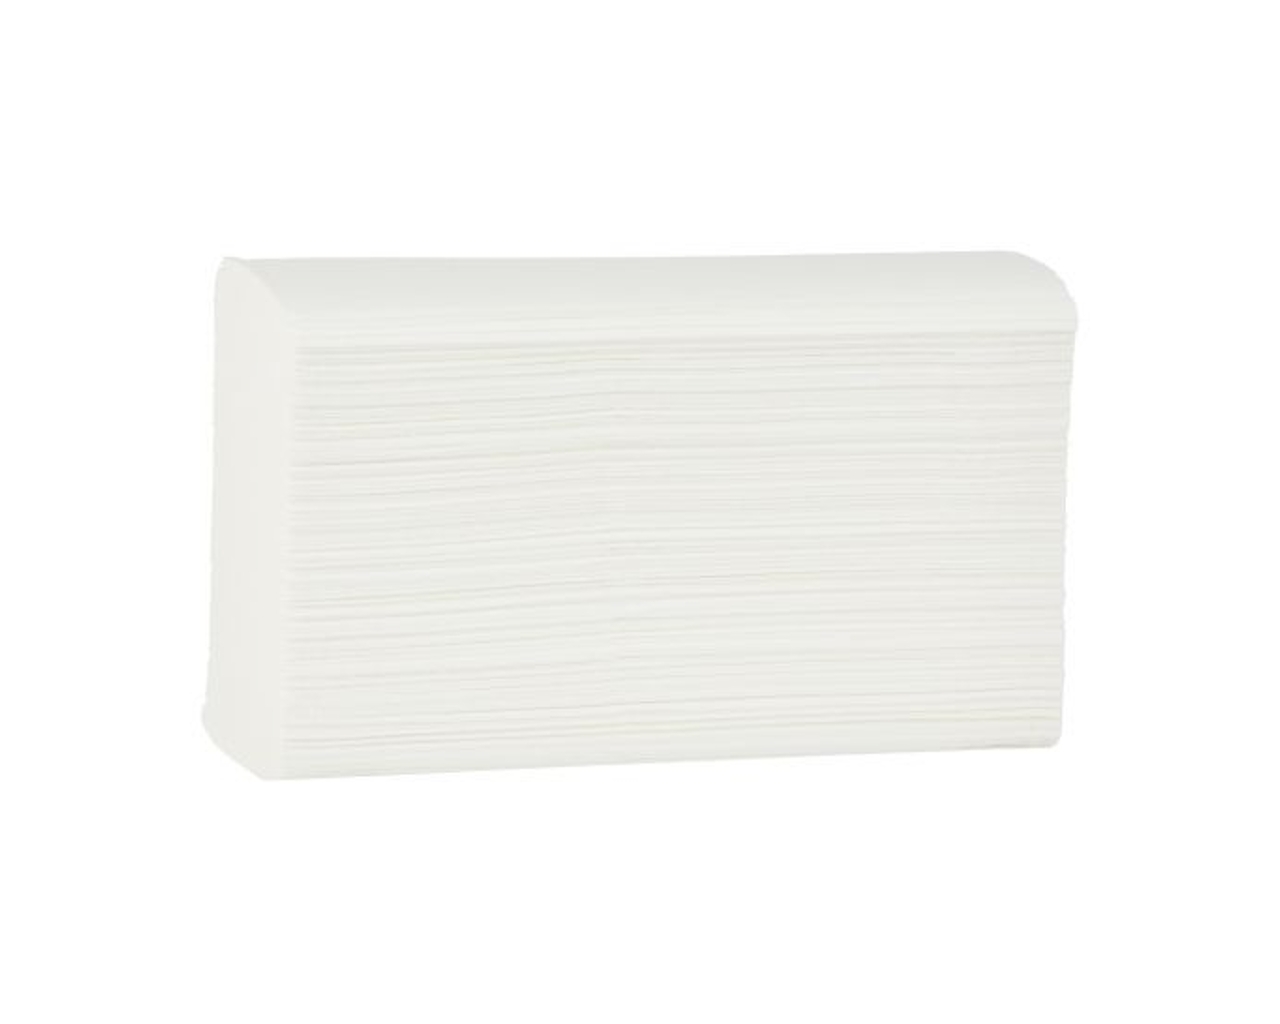 Ręczniki papierowe MERIDA TOP SLIM, białe, dwuwarstwowe, 3000 szt.